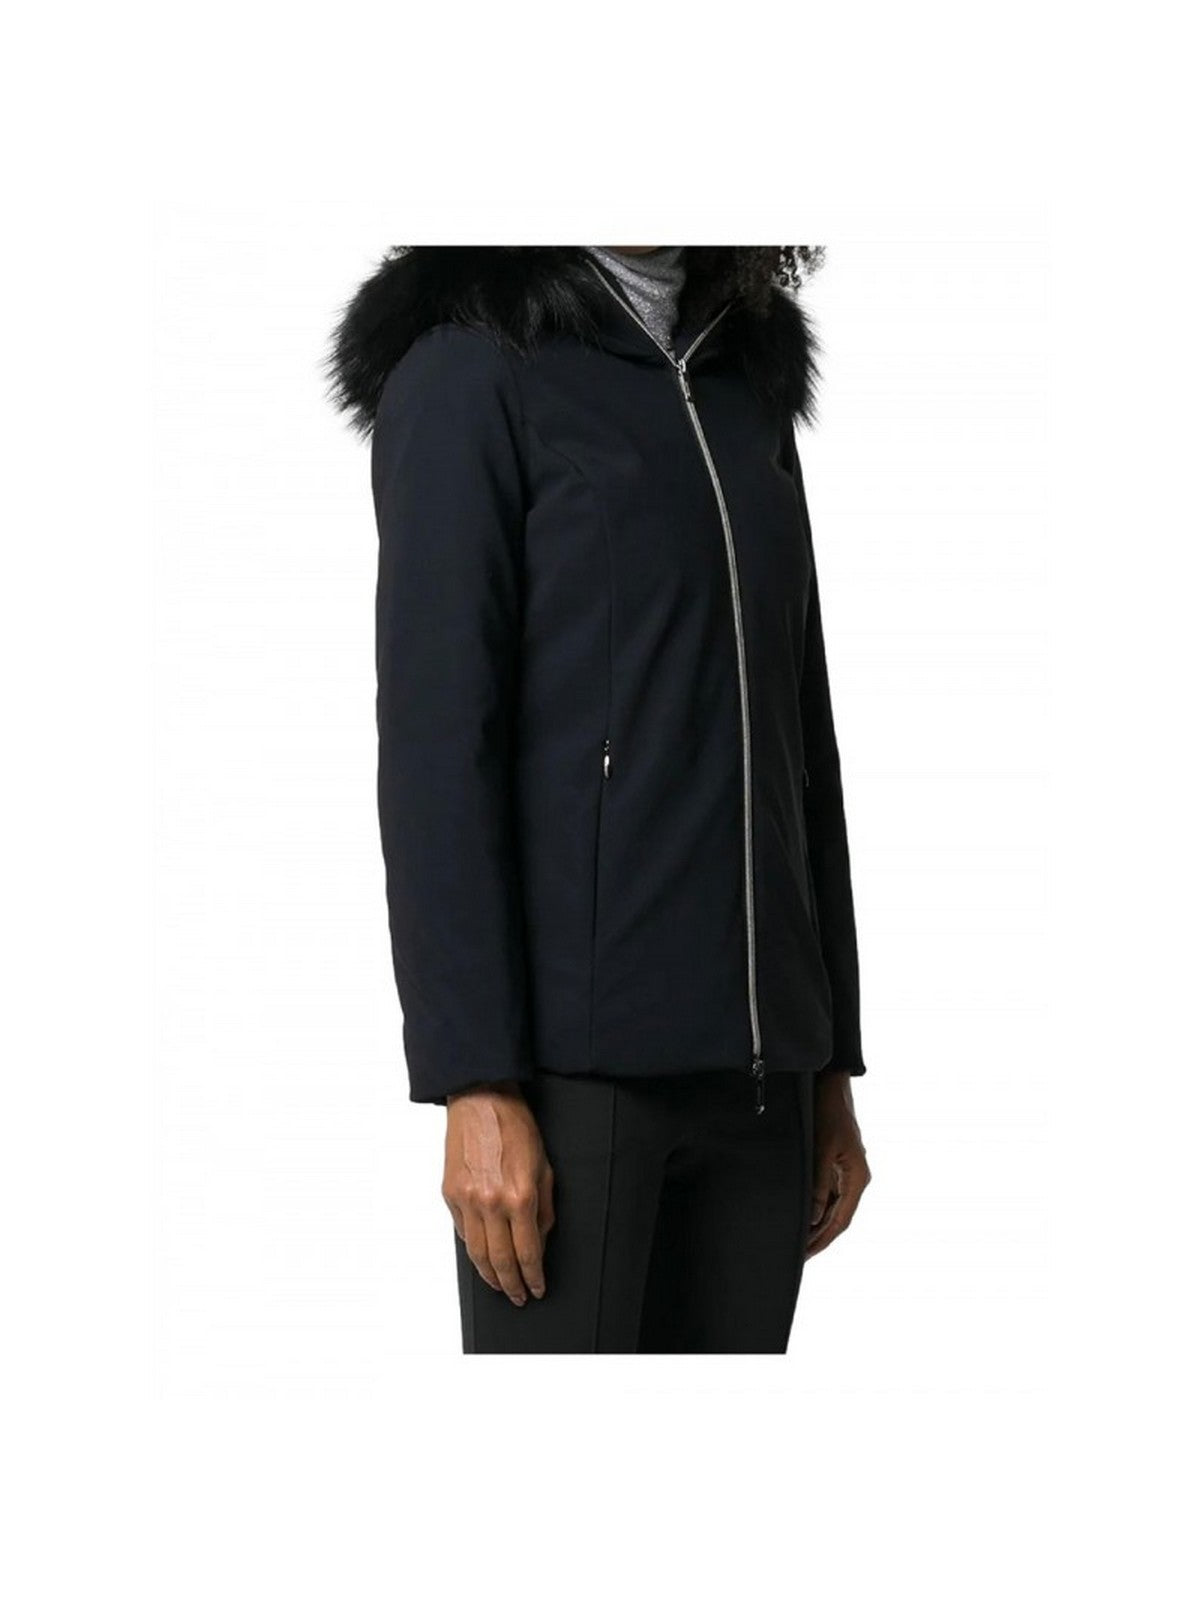 RRD Women's Jacket W23501FT 10 Black